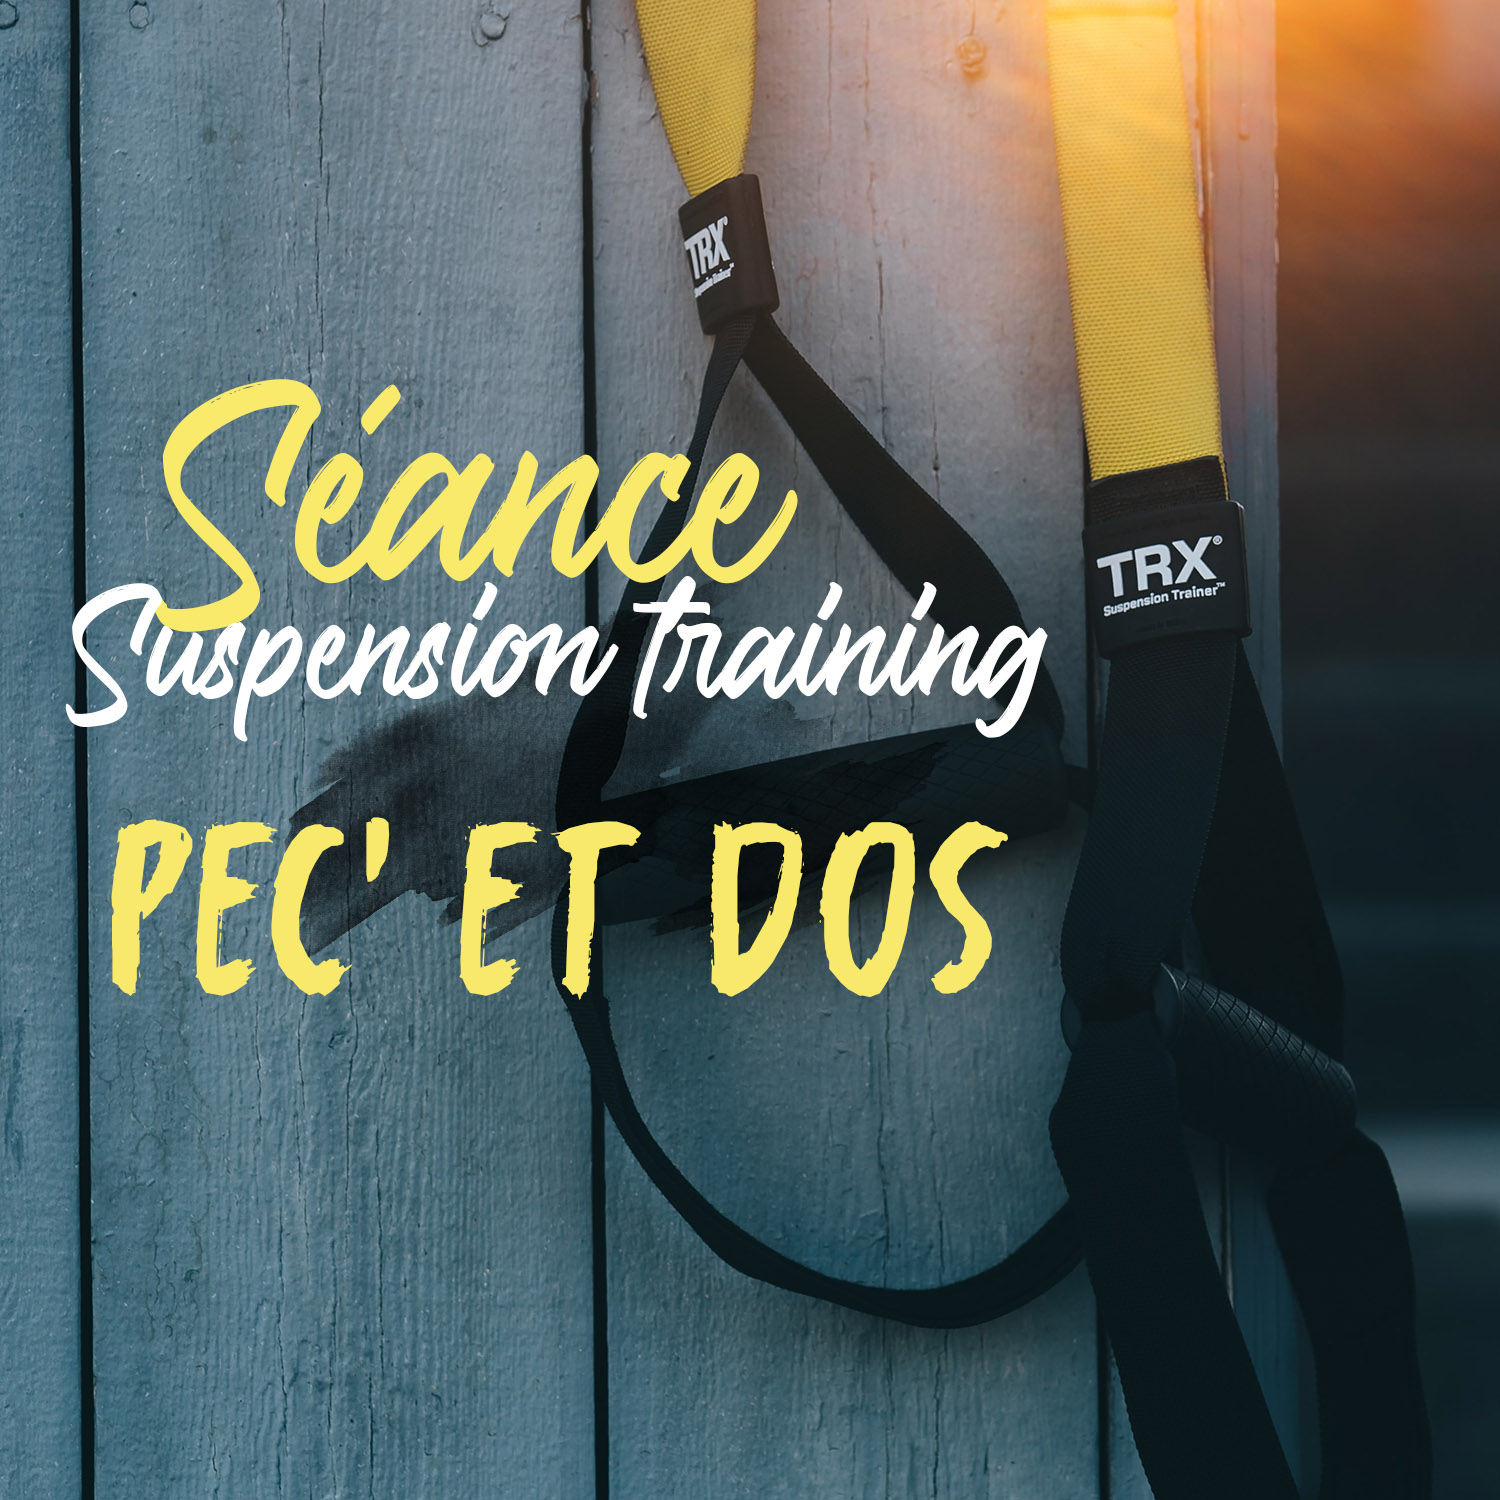 Lire la suite à propos de l’article Séance suspension training (TRX) – pec’ et dos